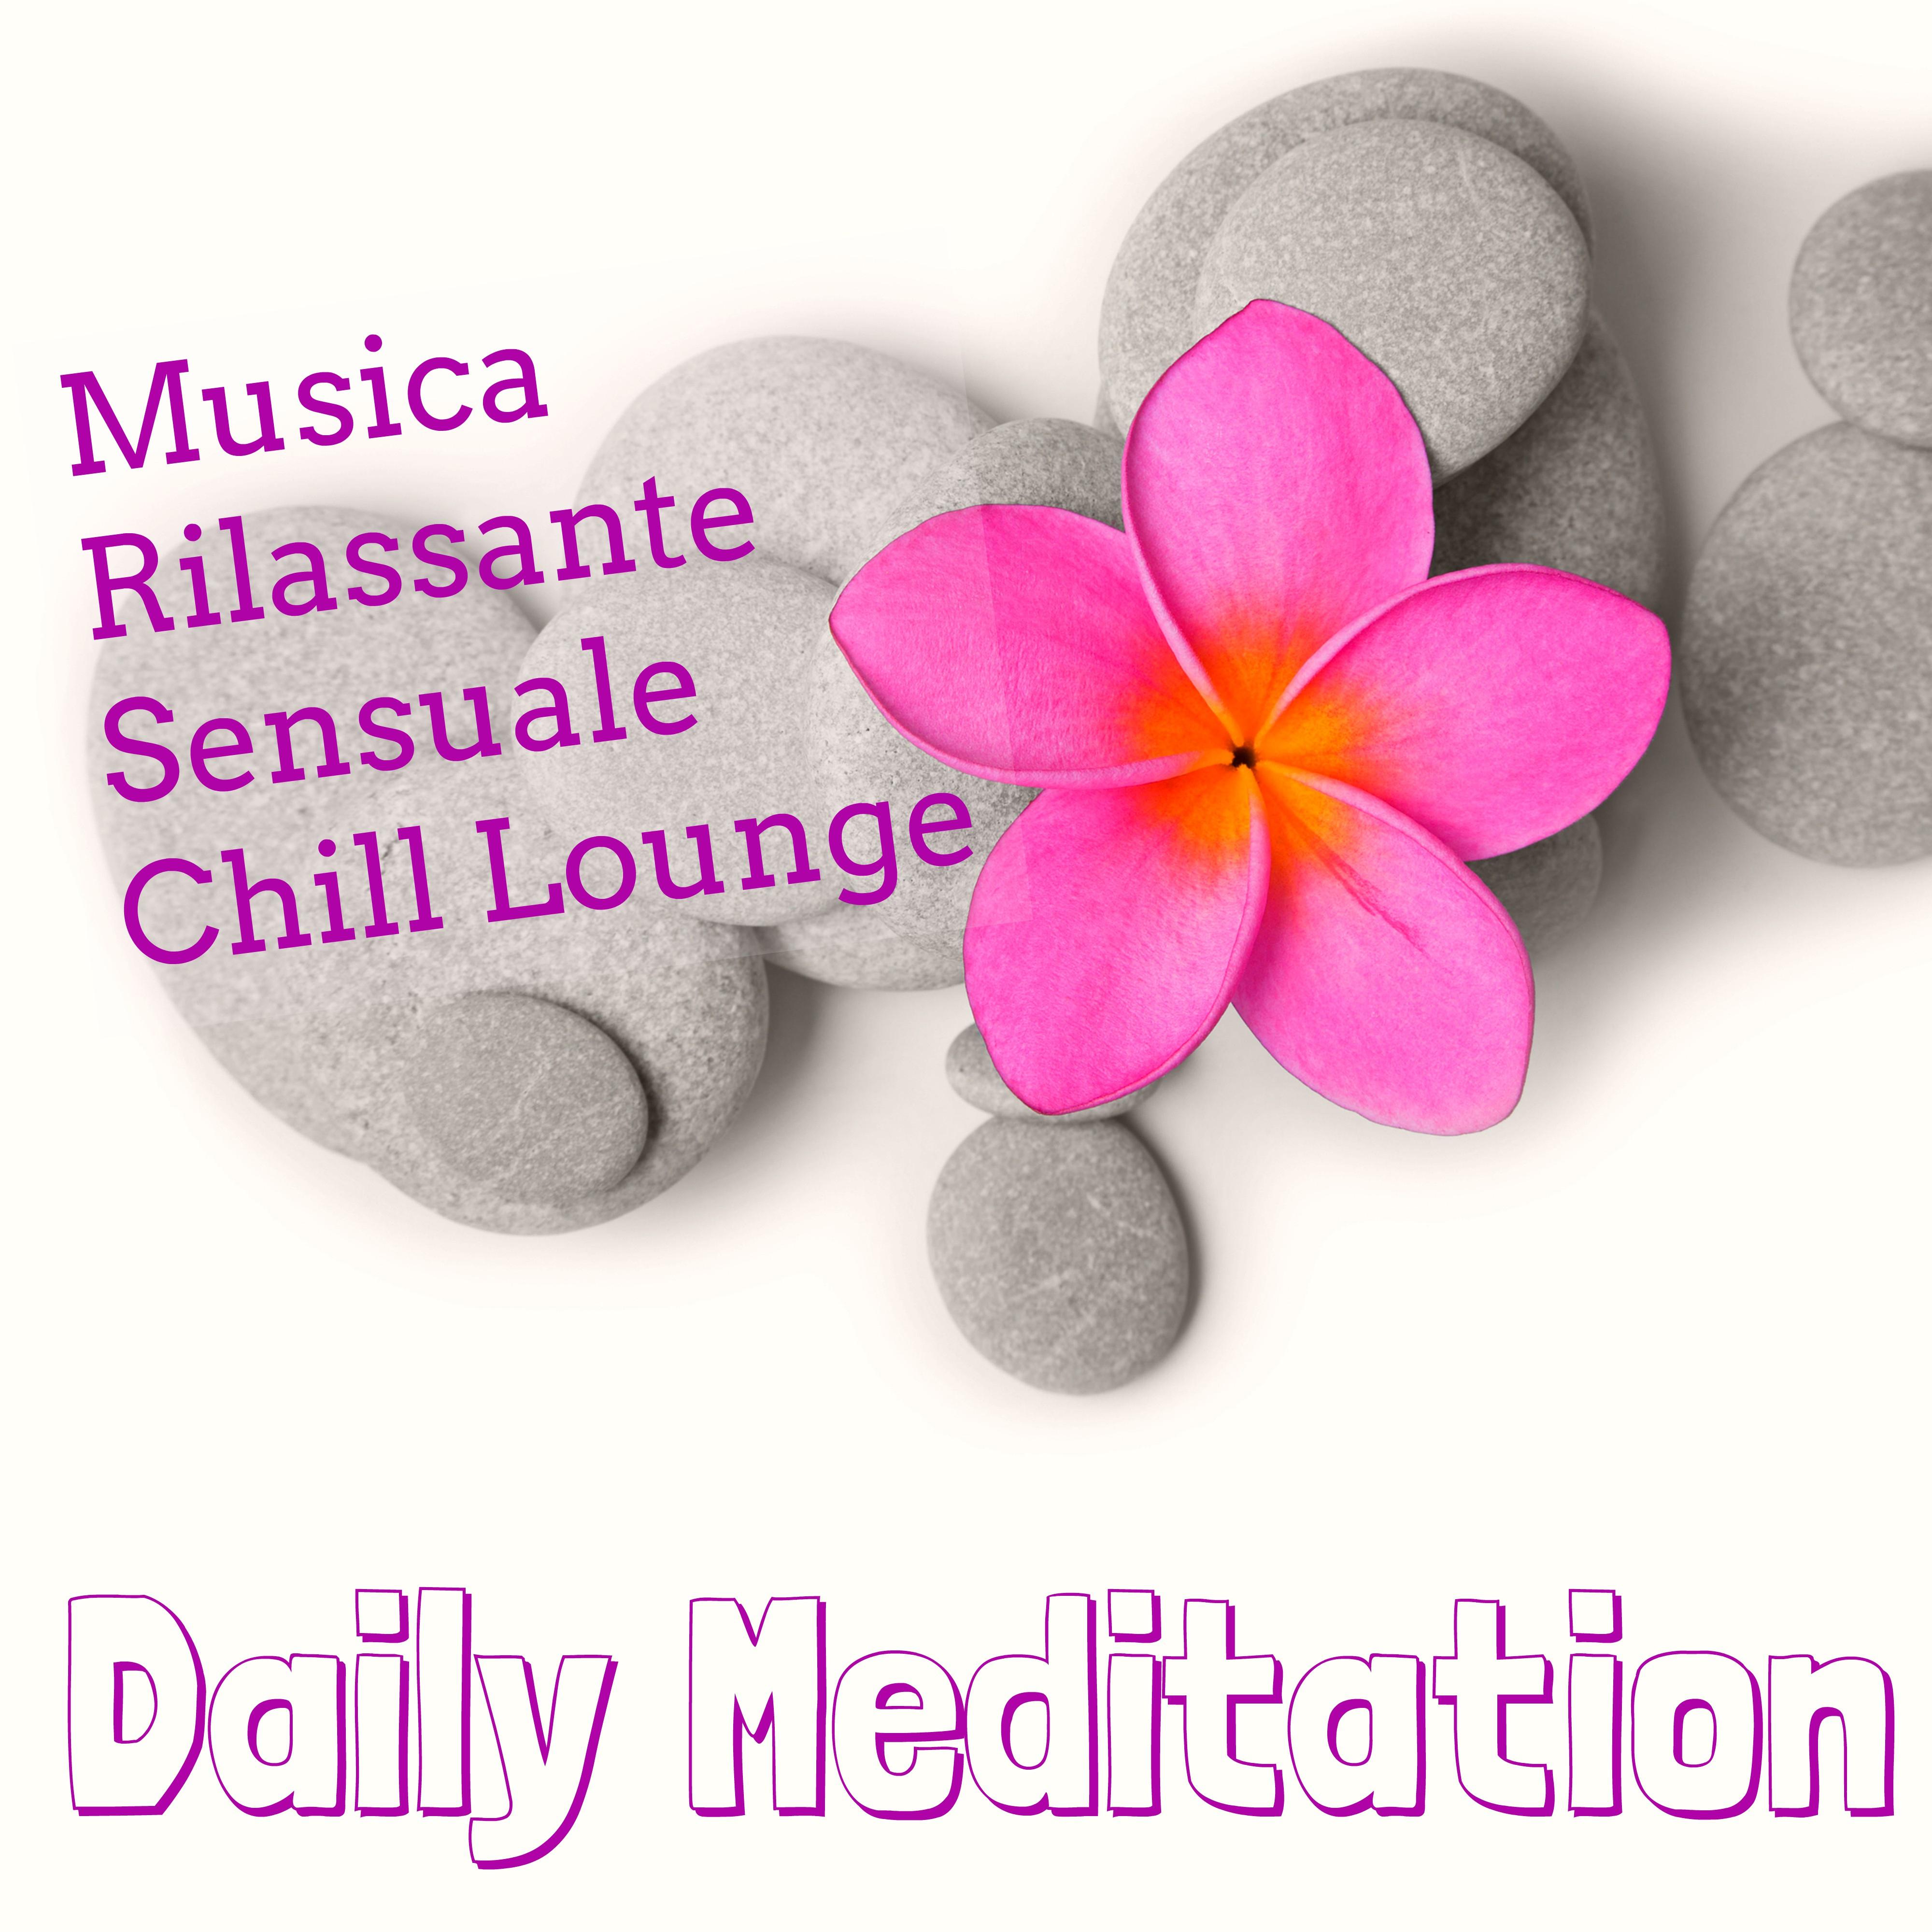 Daily Meditation - Musica Rilassante Sensuale Chill Lounge per Tecniche di Rilassamento Mentale e Spa Weekend Benessere